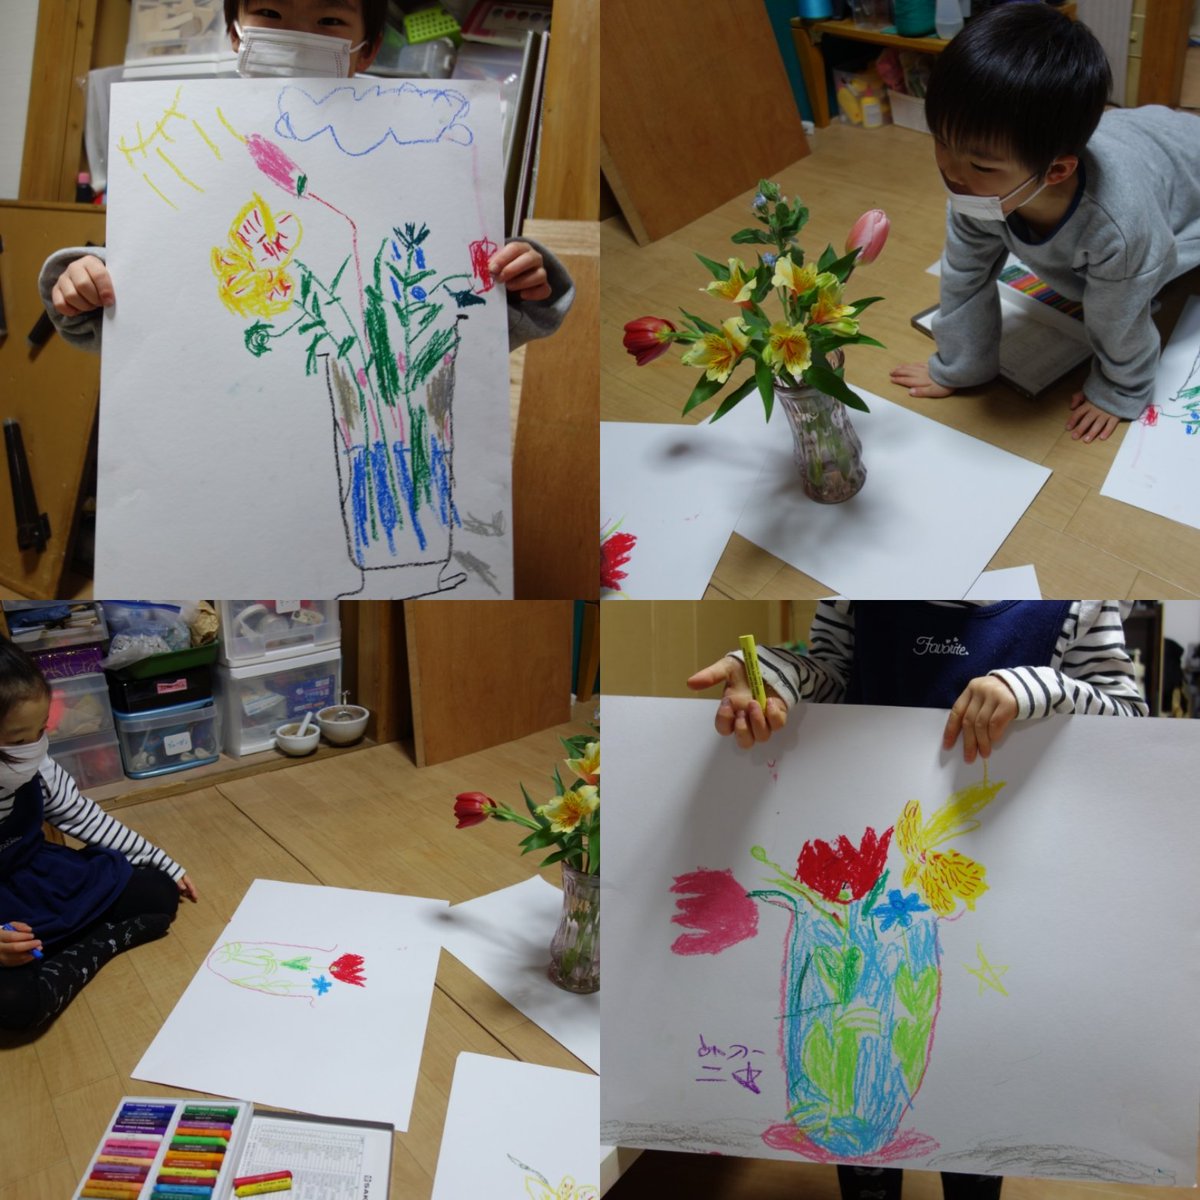 よーく見て描こう課題。お花を描こう！50色のクレヨンを使ってお花の中から色んな色を探しました😀

アトリエ☆どんぐりでは第２・4火曜日幼児クラス追加募集中です。年中、年長さんあと1名です。

第2・4㈫15時半〜16時40分まで

お問い合わせ：070-1467-6173
メール：artdonguri@yahoo.co.jp